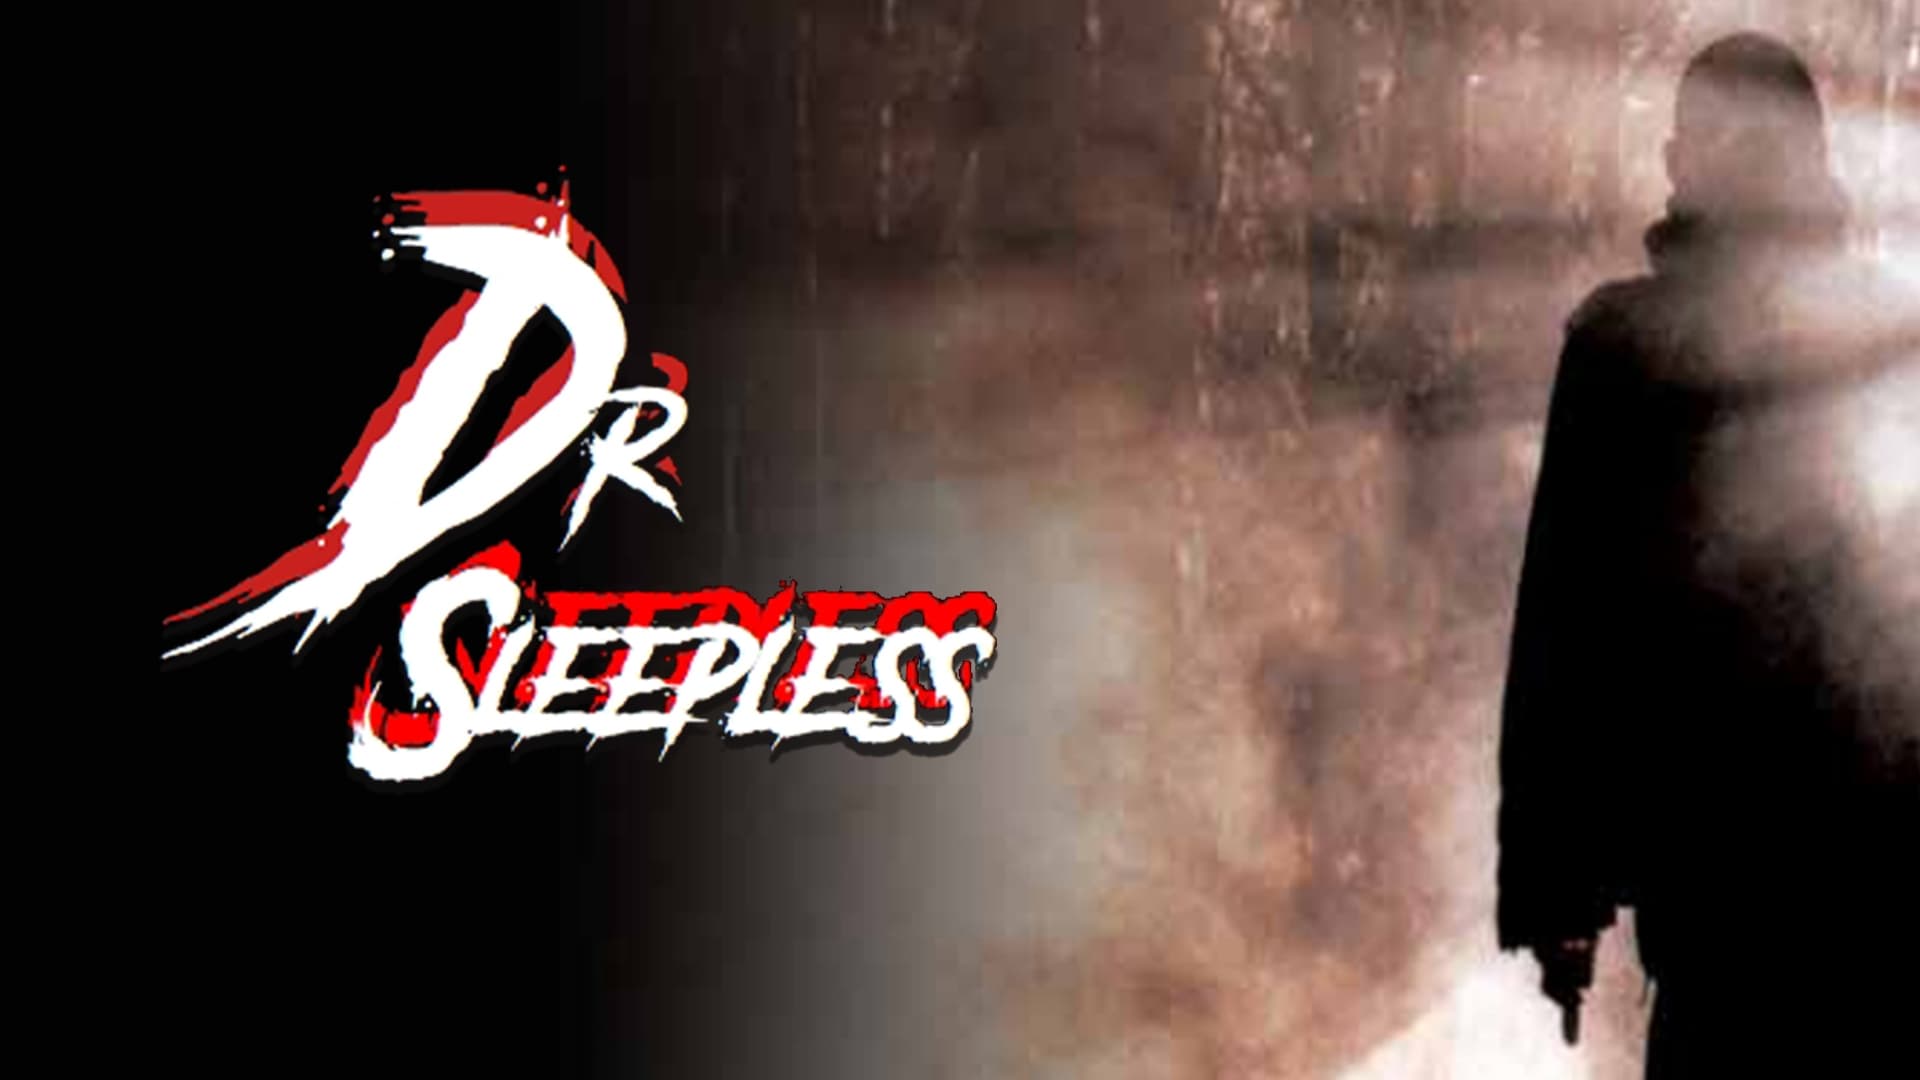 Dr Sleepless